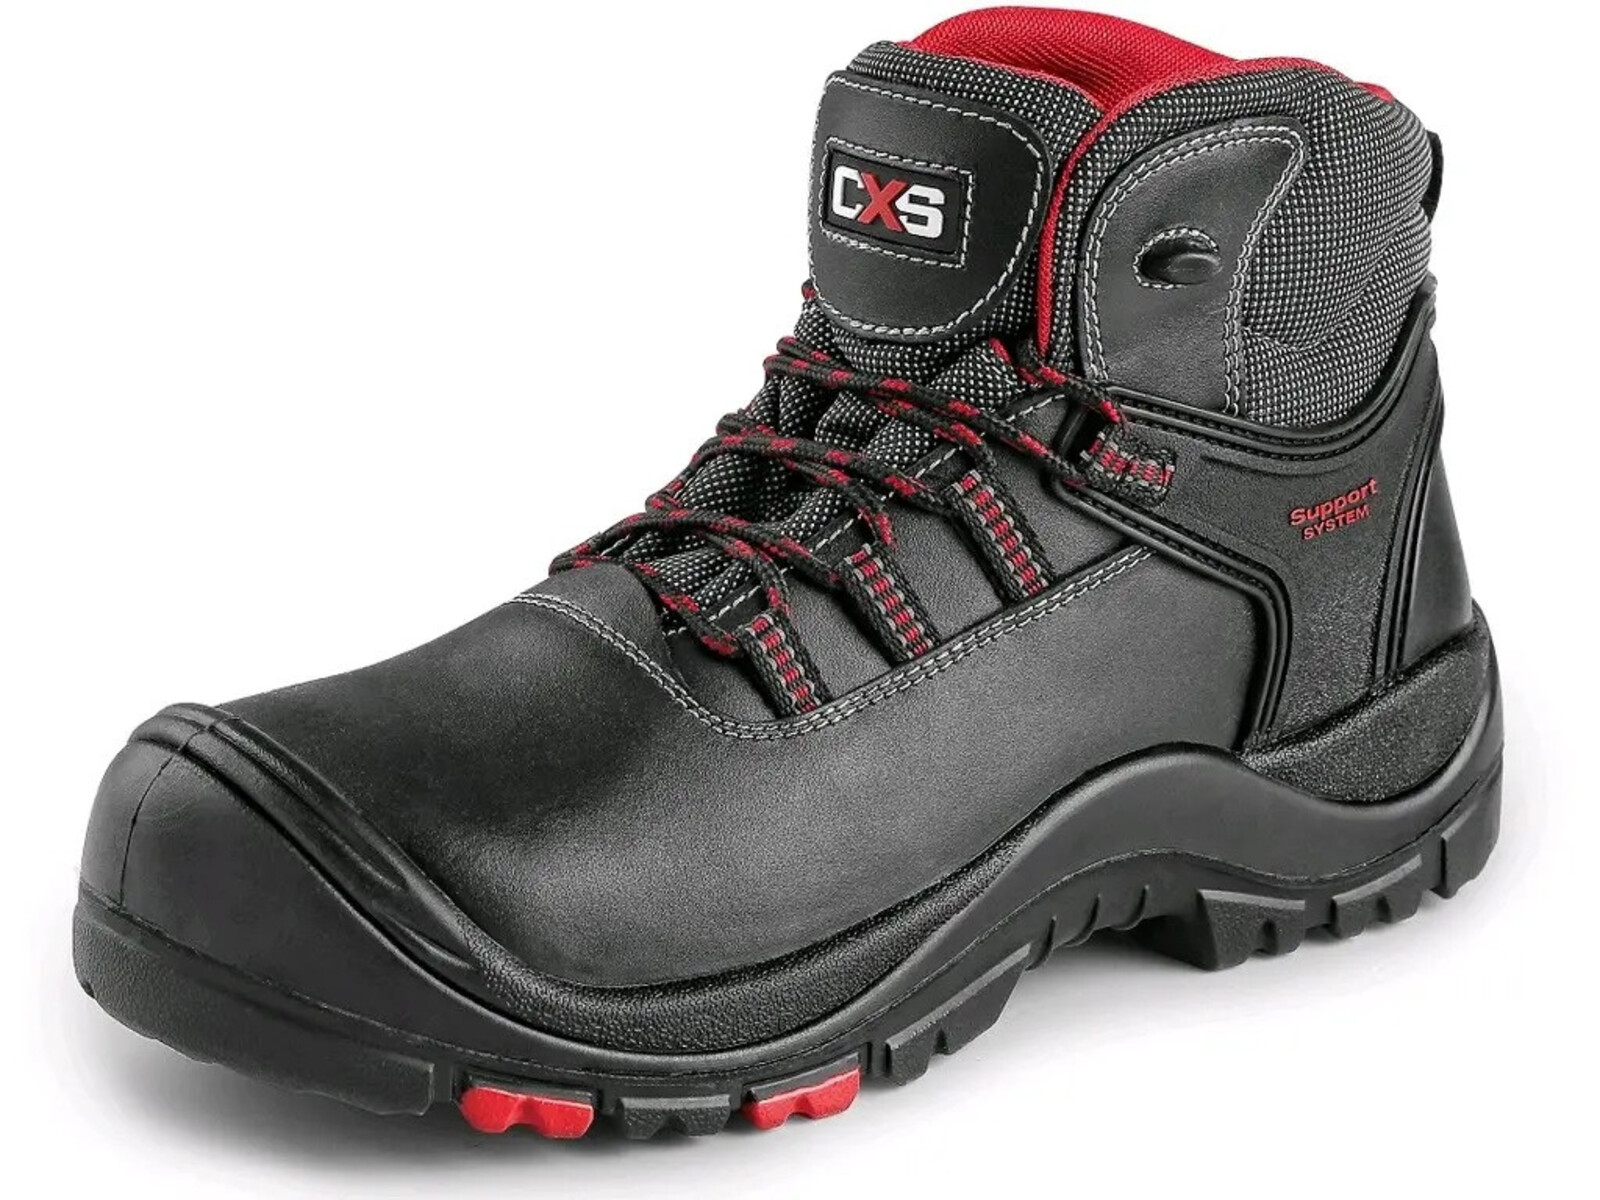 Bezpečnostná členková obuv CXS Rock Granite S3 SRC HRO MF - veľkosť: 40, farba: čierna/červená